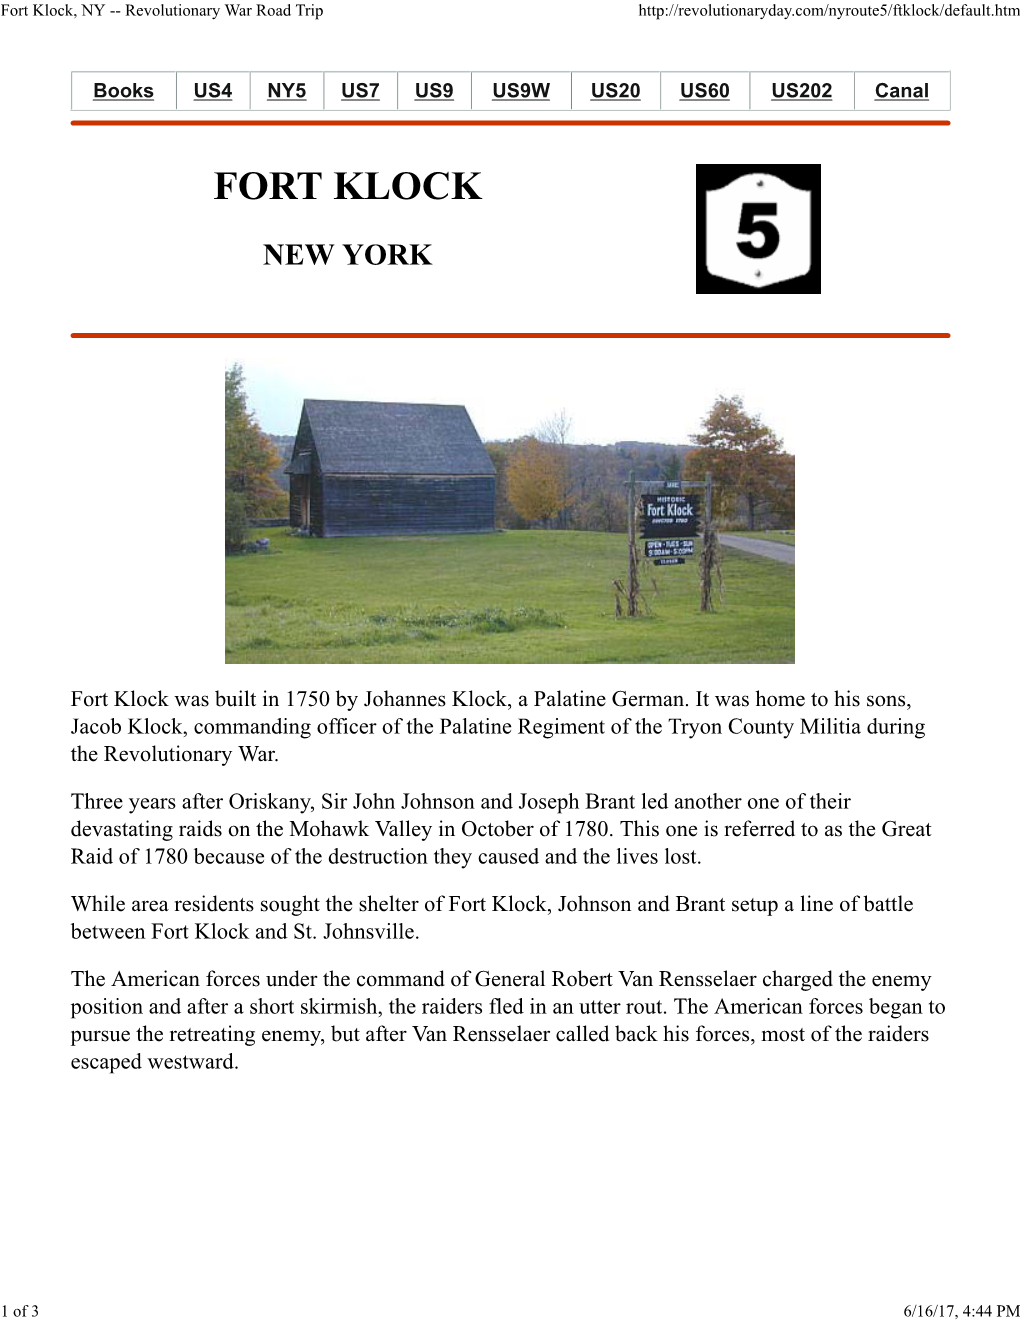 Fort Klock, NY -- Revolutionary War Road Trip